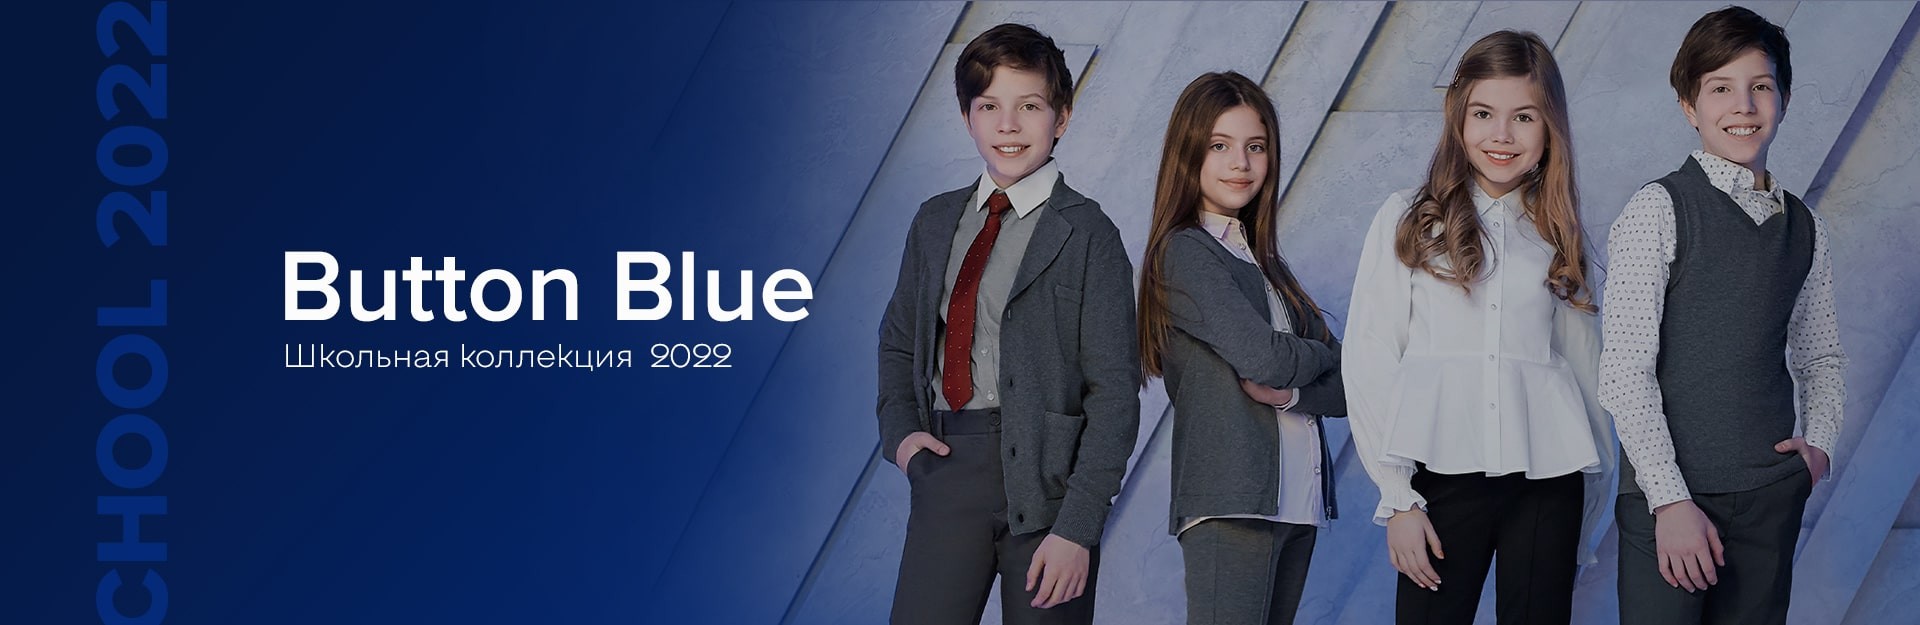 Школьная коллекция 2022 Button Blue